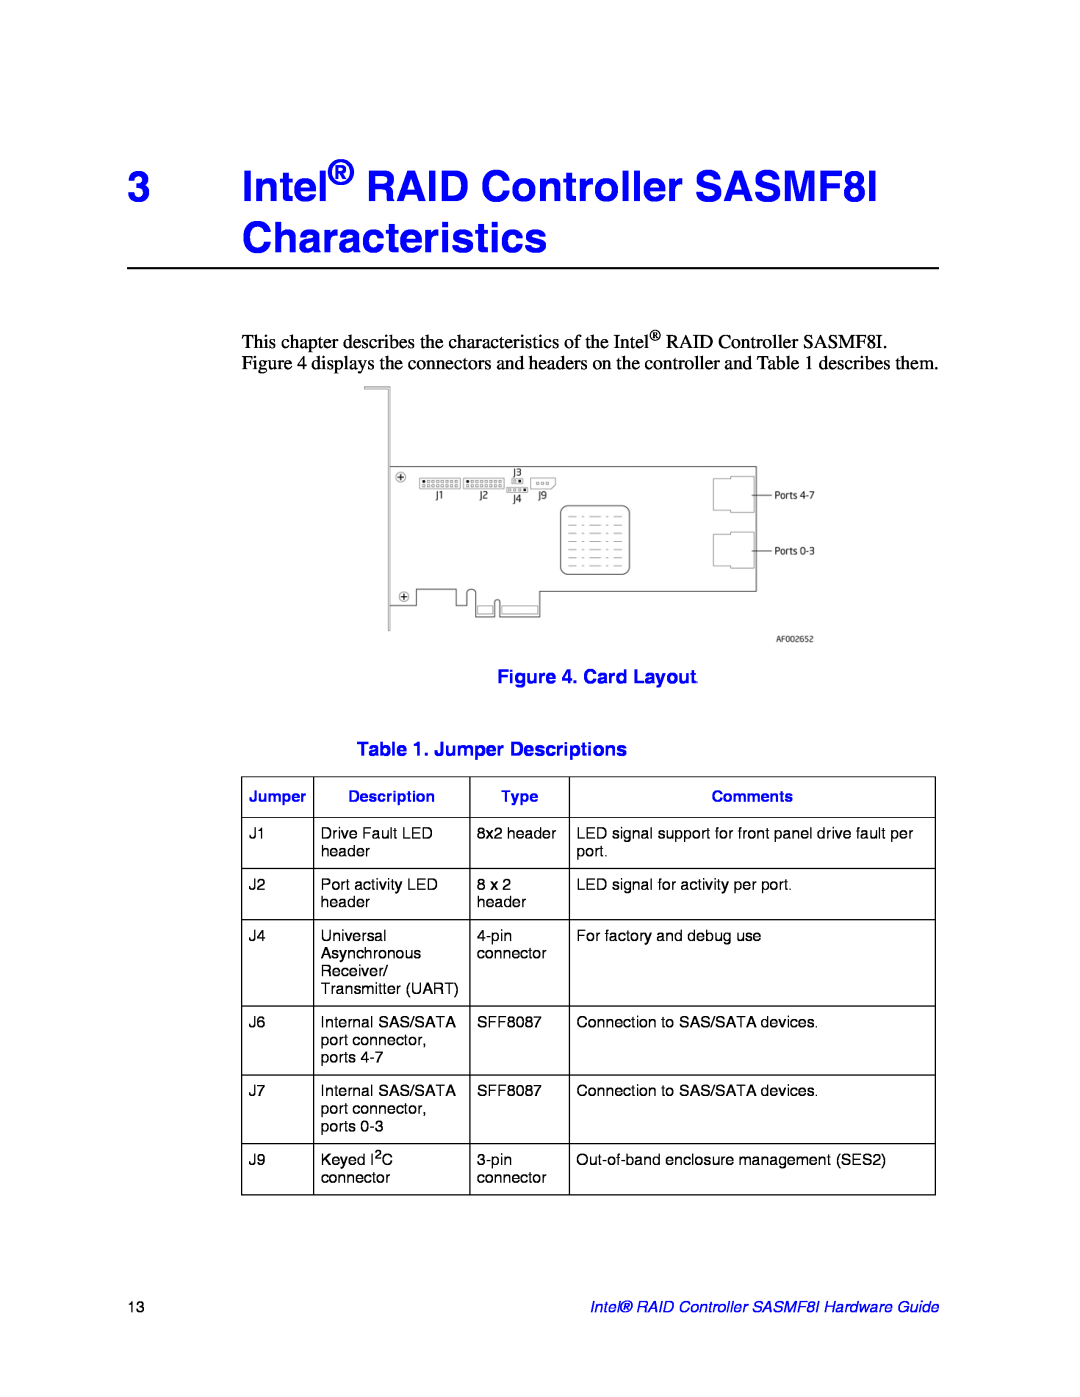 Intel manual 3Intel RAID Controller SASMF8I Characteristics, Card Layouts, Jumper Descriptions 